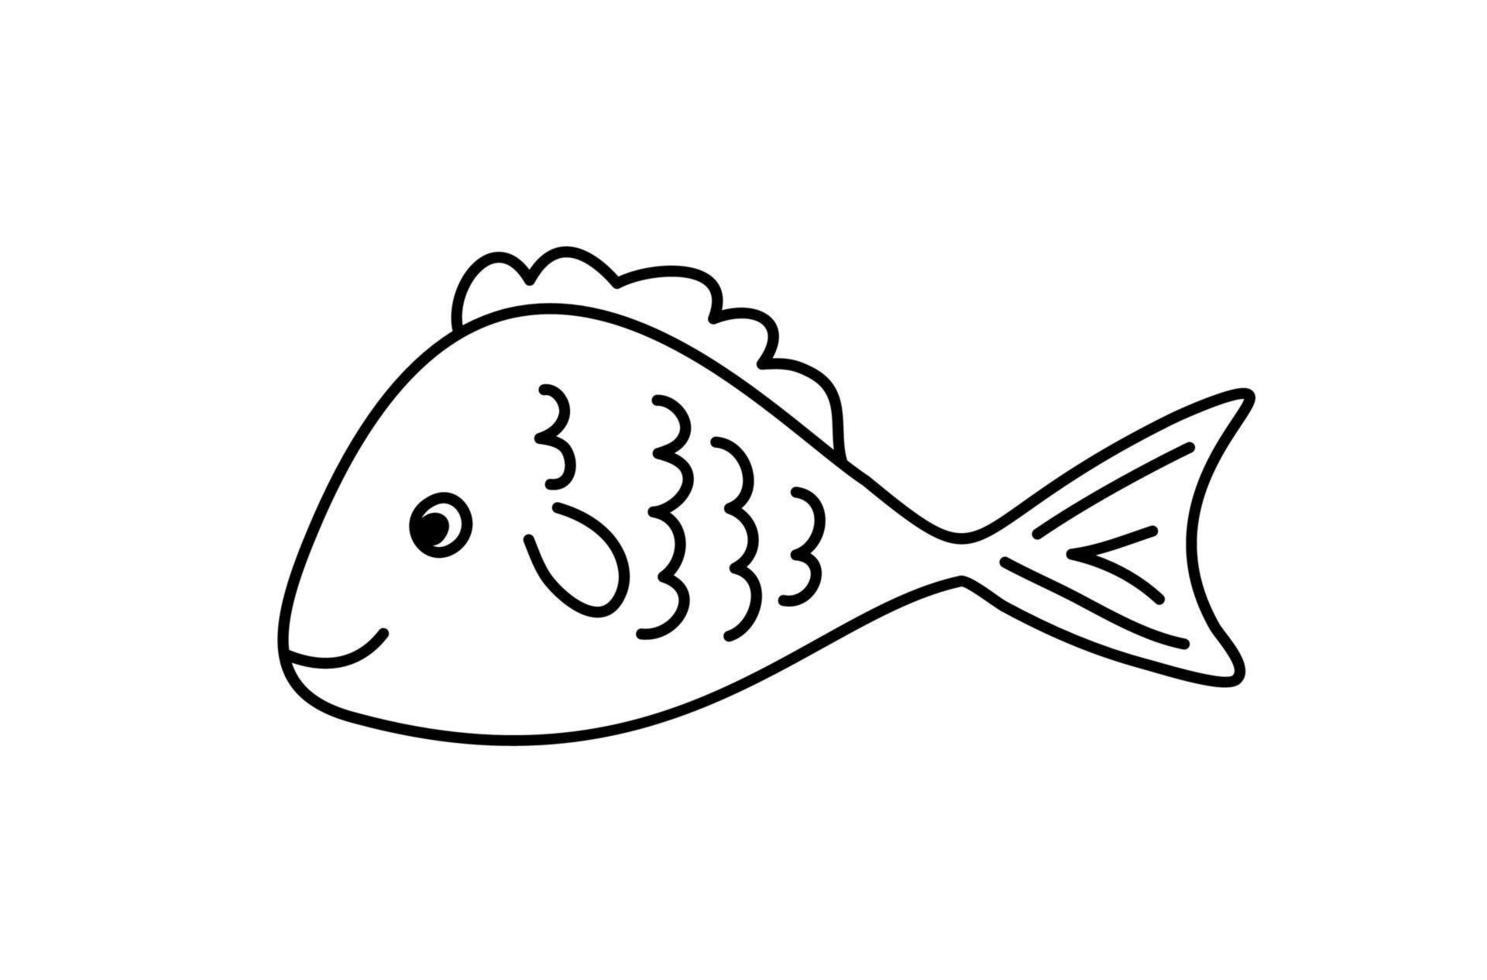 vektor handritad doodle clown fisk i monoline skandinavisk stil. bild för etikett, webbikon, vykortsdekoration. gladt barnsligt, sött marint tema